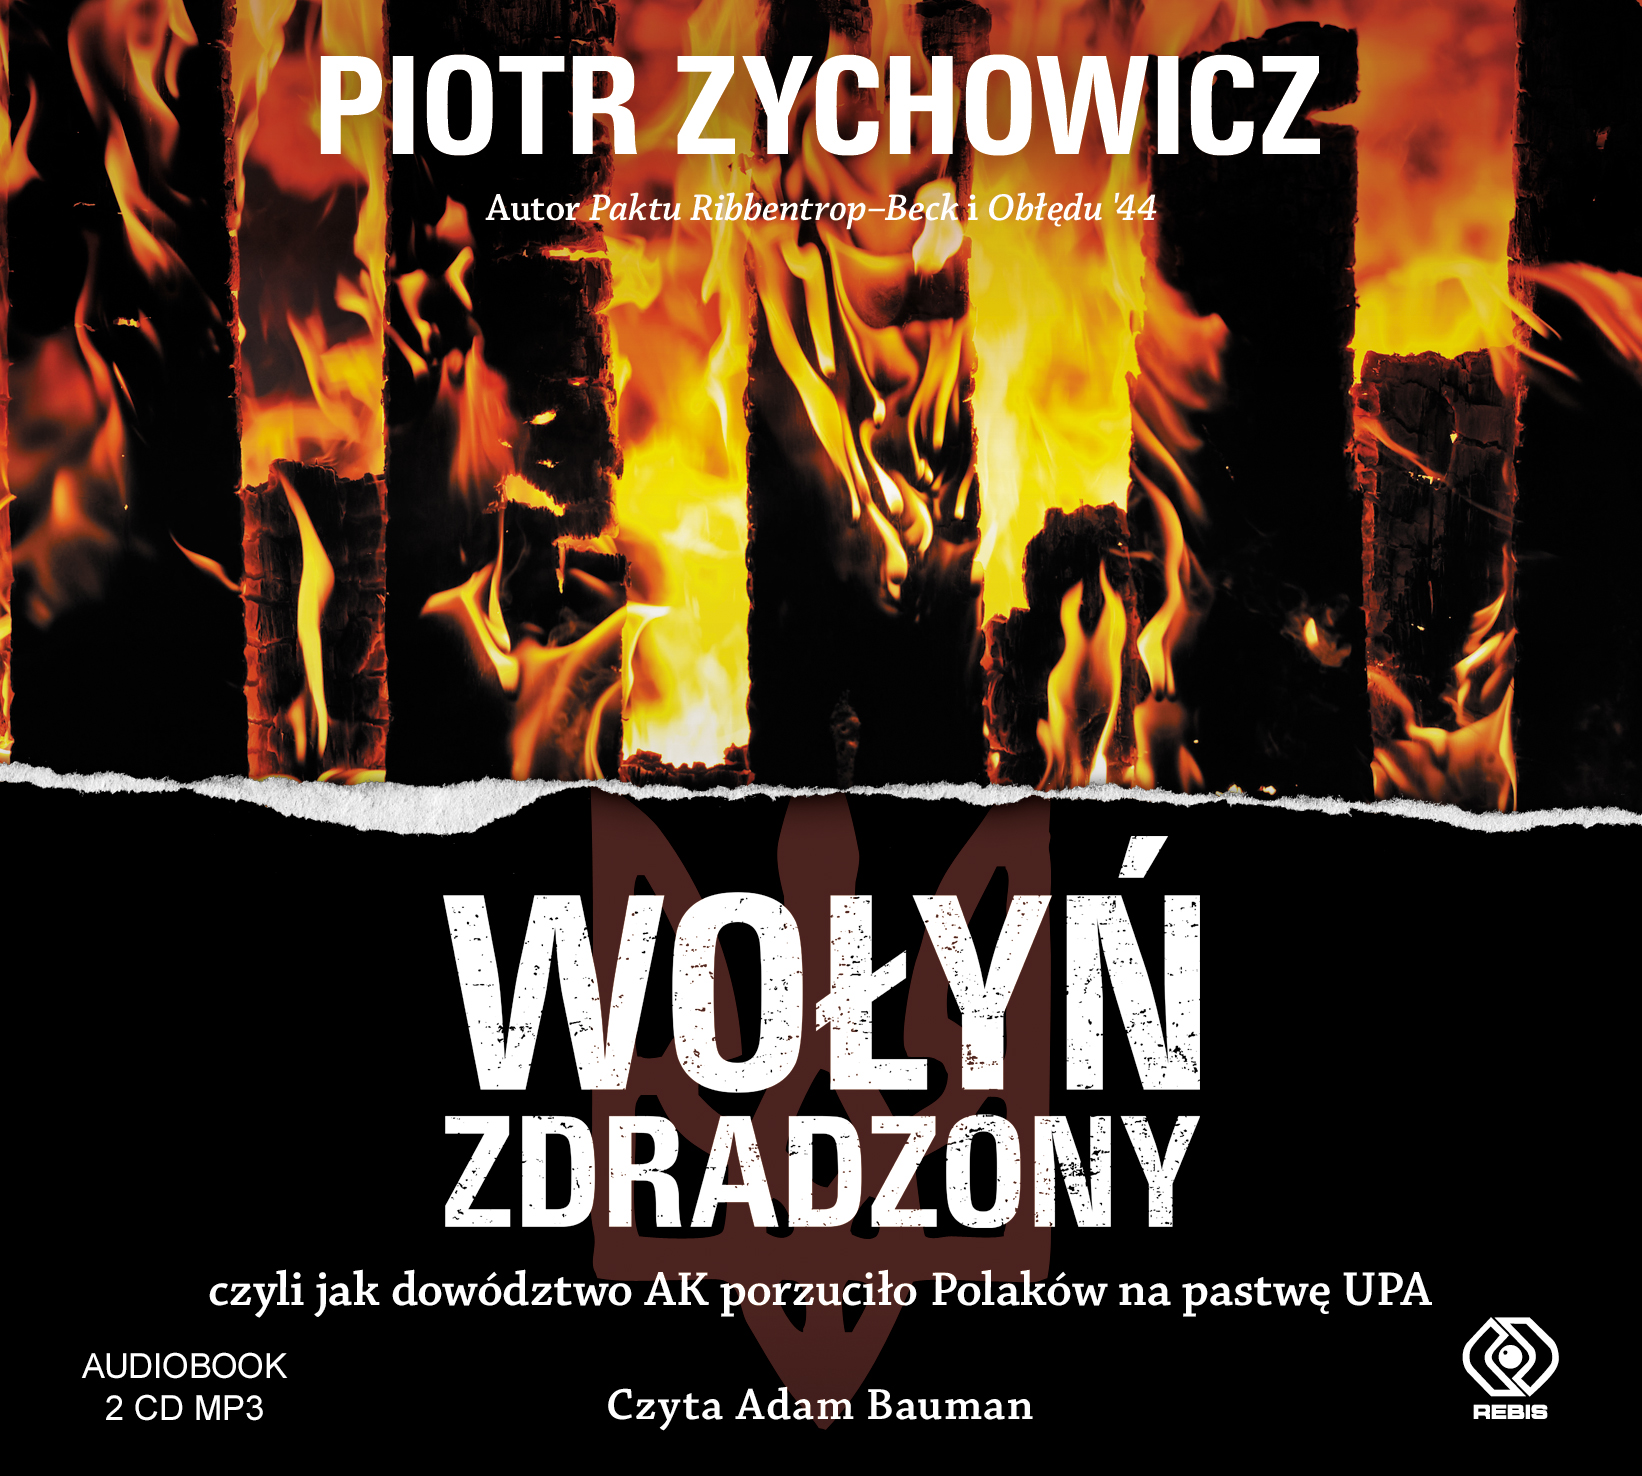 Zychowicz Piotr - Wołyń Zdradzony